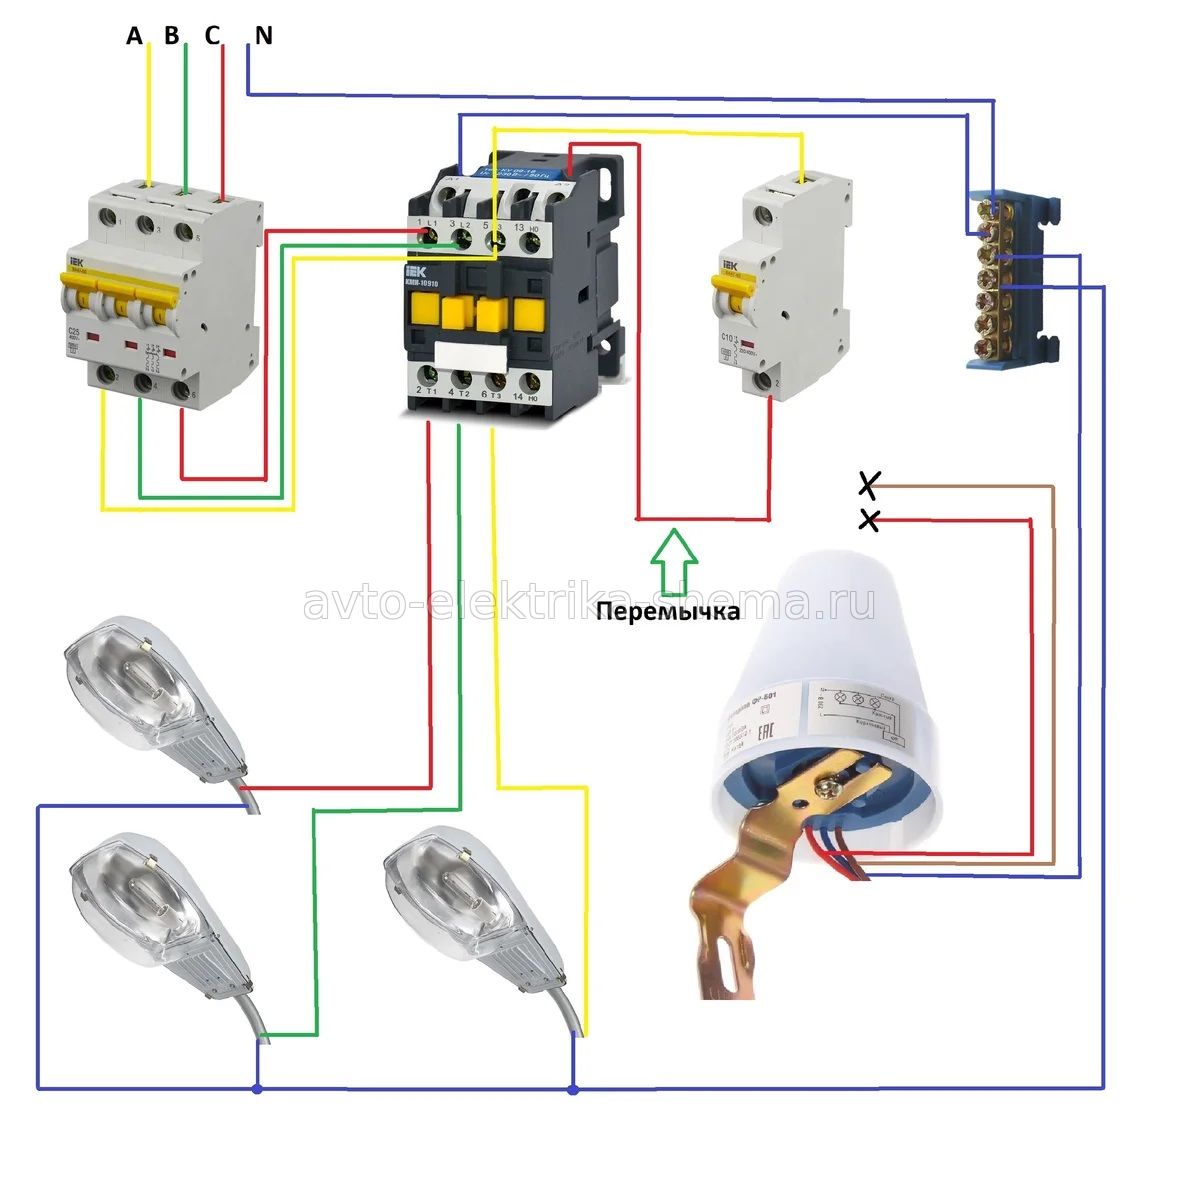 Принцип работы схемы подключения электромагнитного пускателя 380В